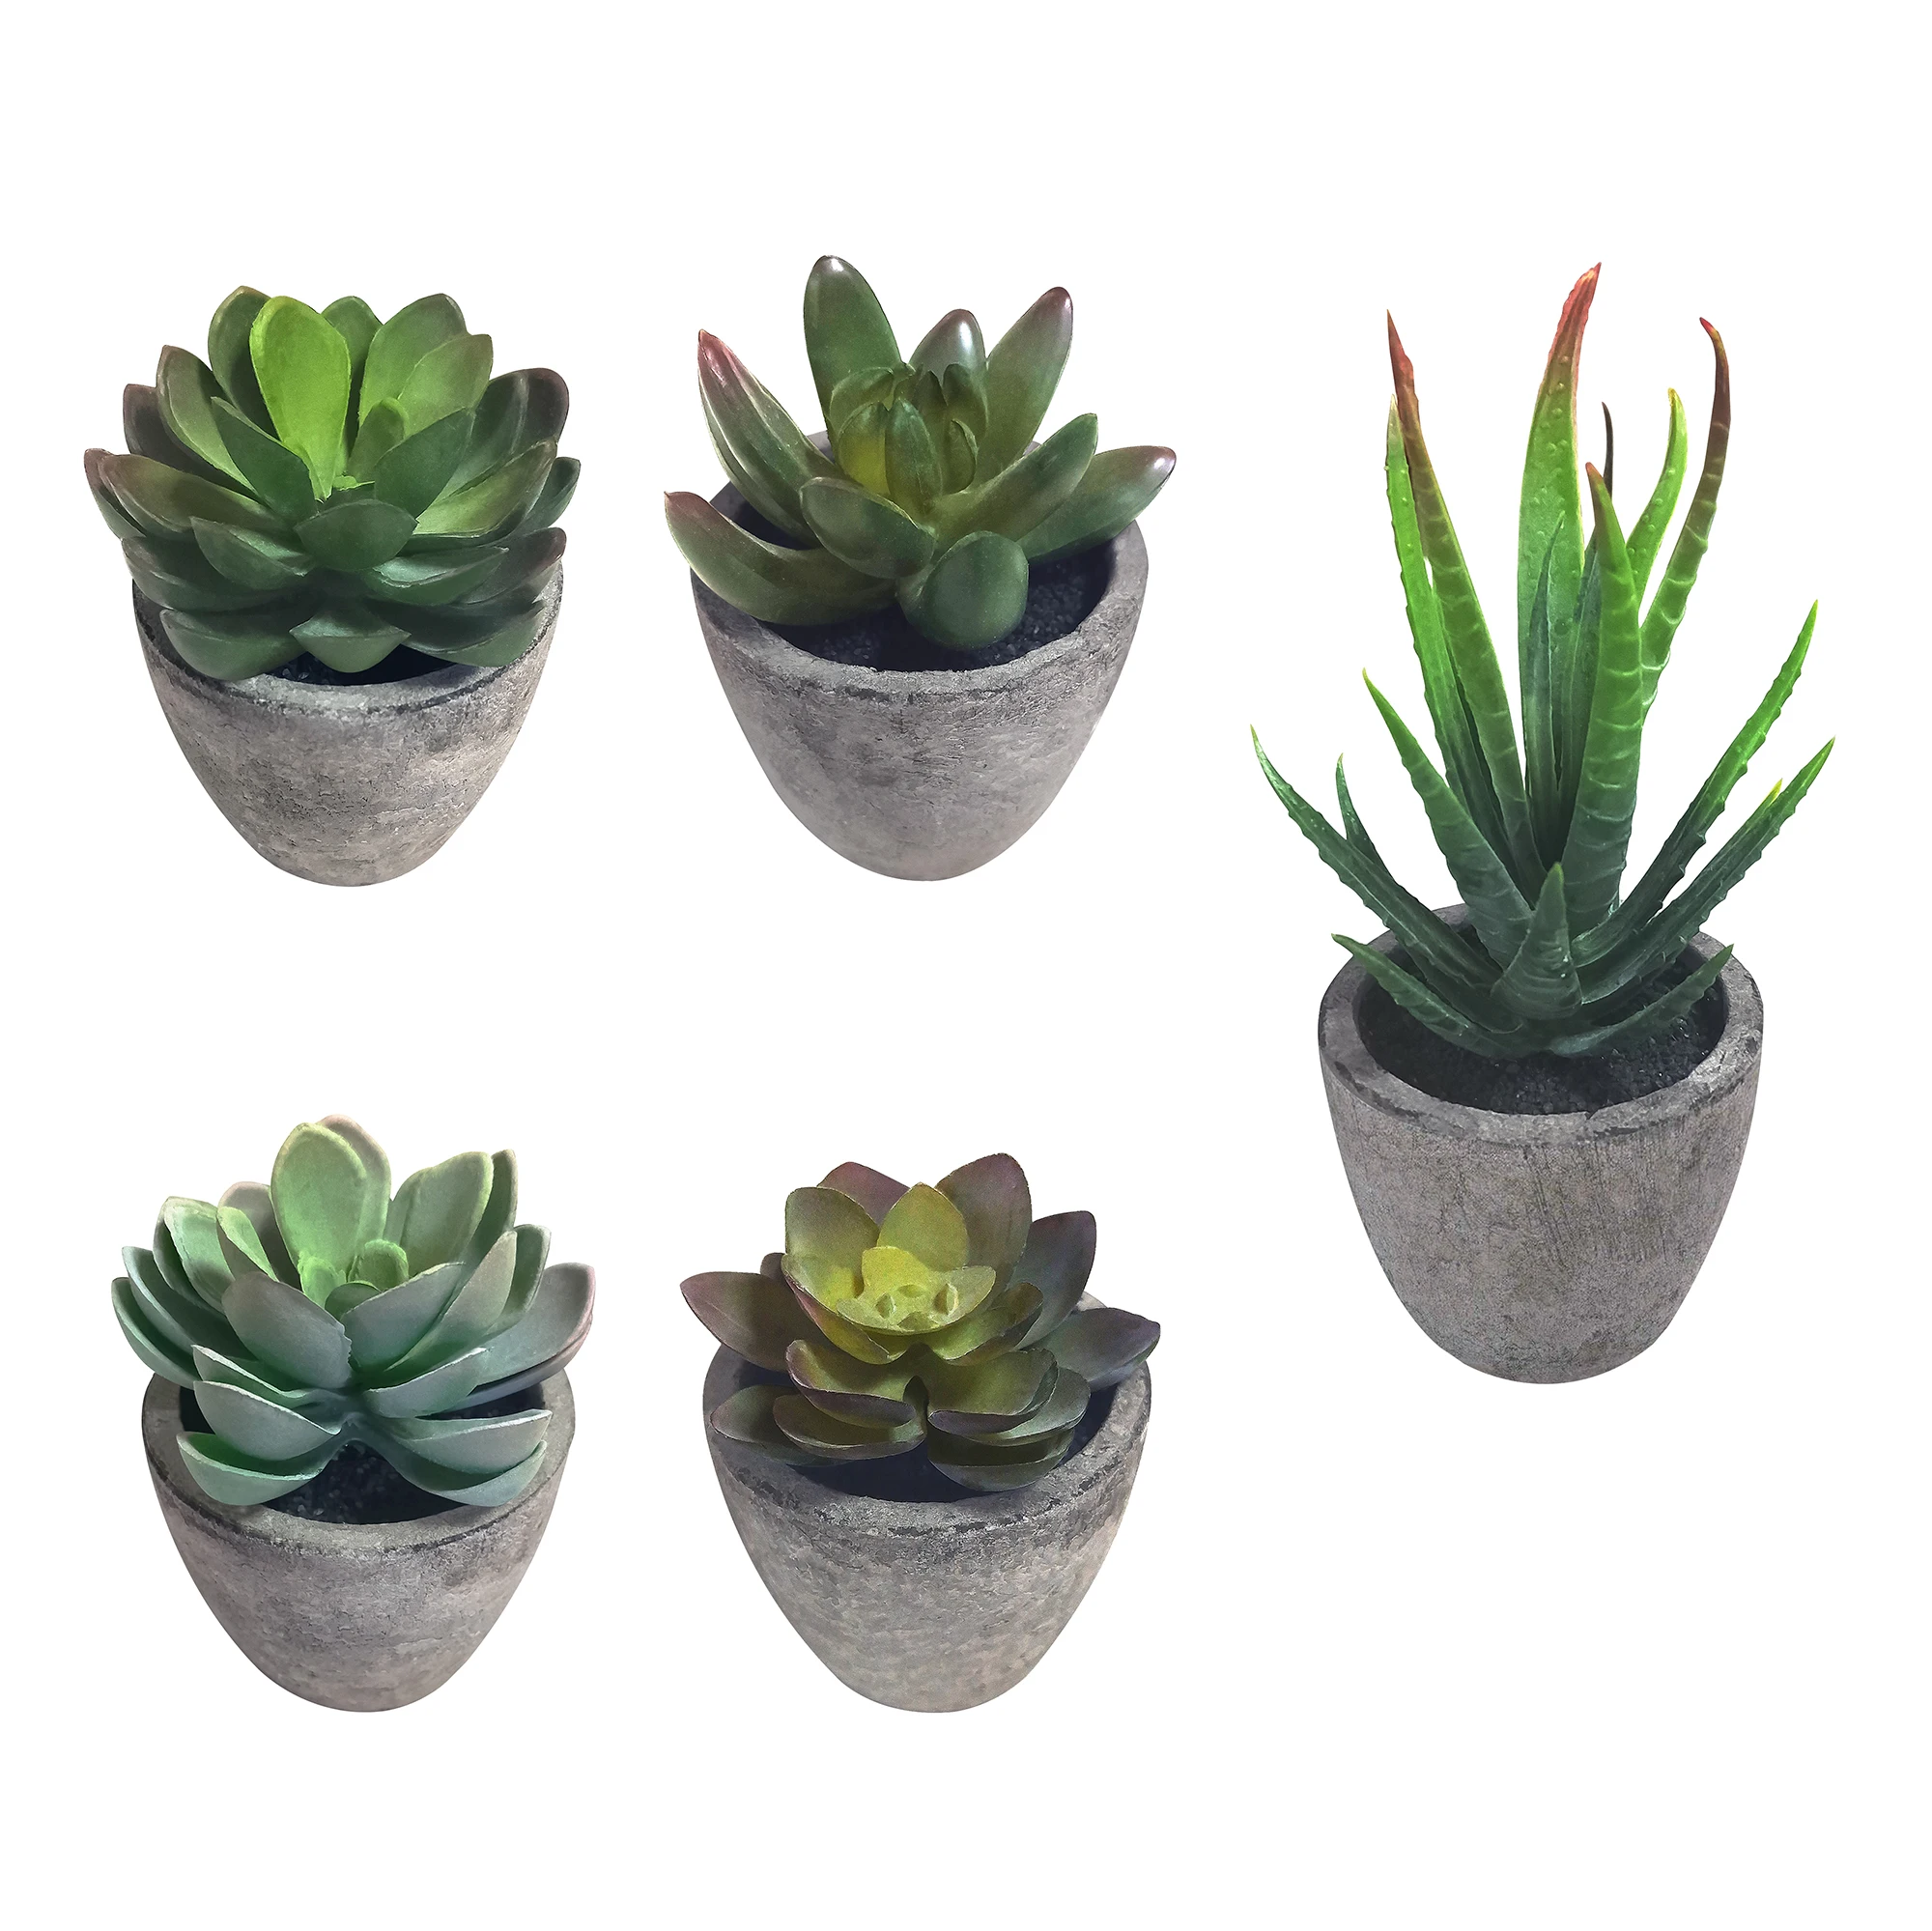 5pcs Artificial Succulent Plants Lifelike Mini Faux Succulent Plant With Gray Pots For Home Decor images - 6